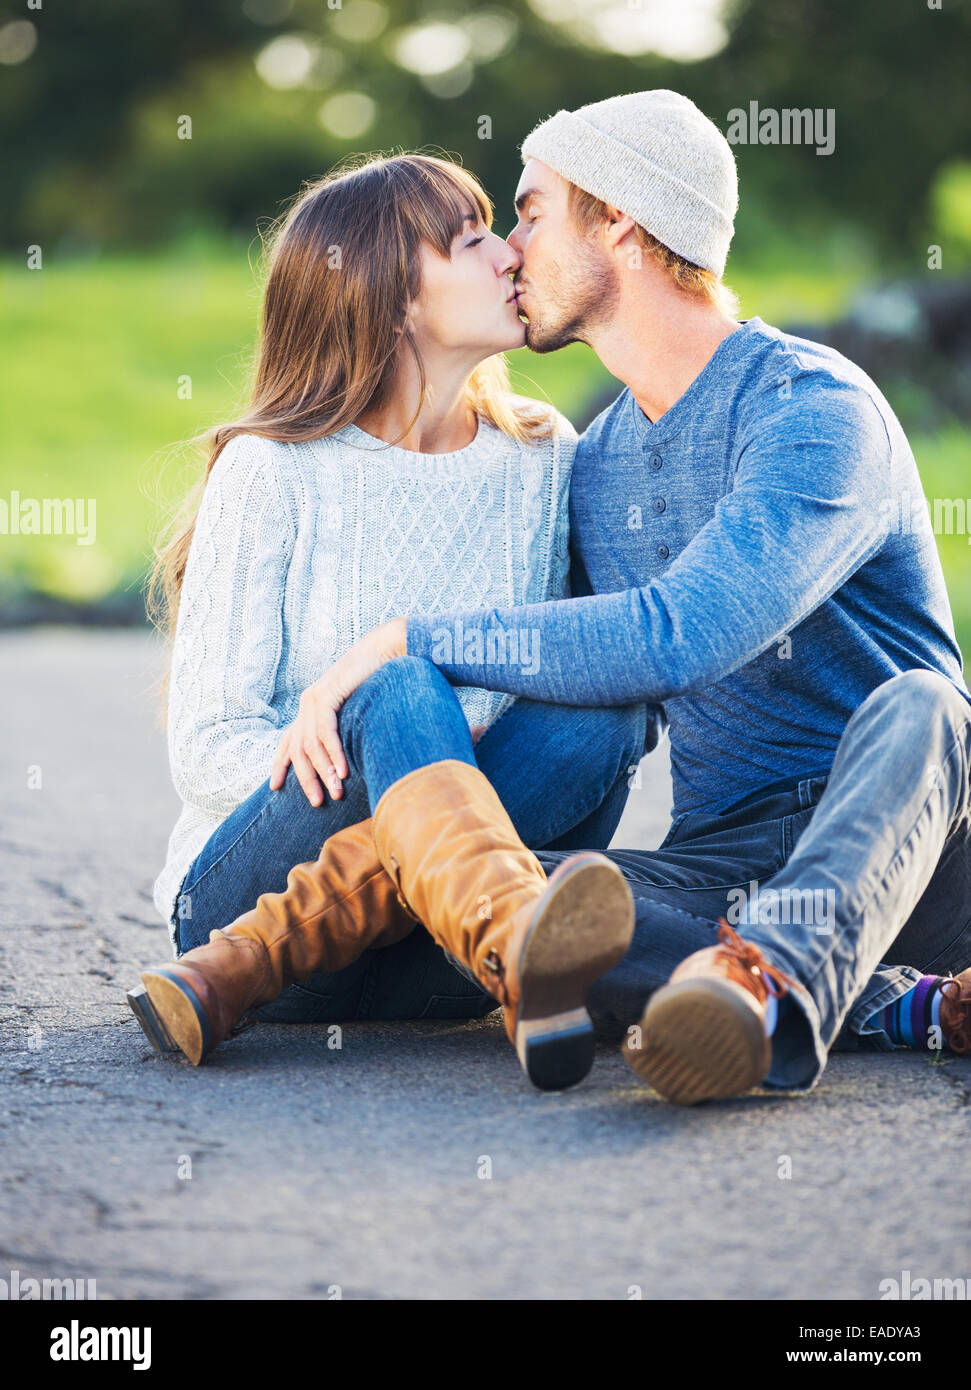 Glückliche junge Paare, die Spaß im Freien. Romantisches Paar küssen in der  Liebe auf der Landstraße Stockfotografie - Alamy